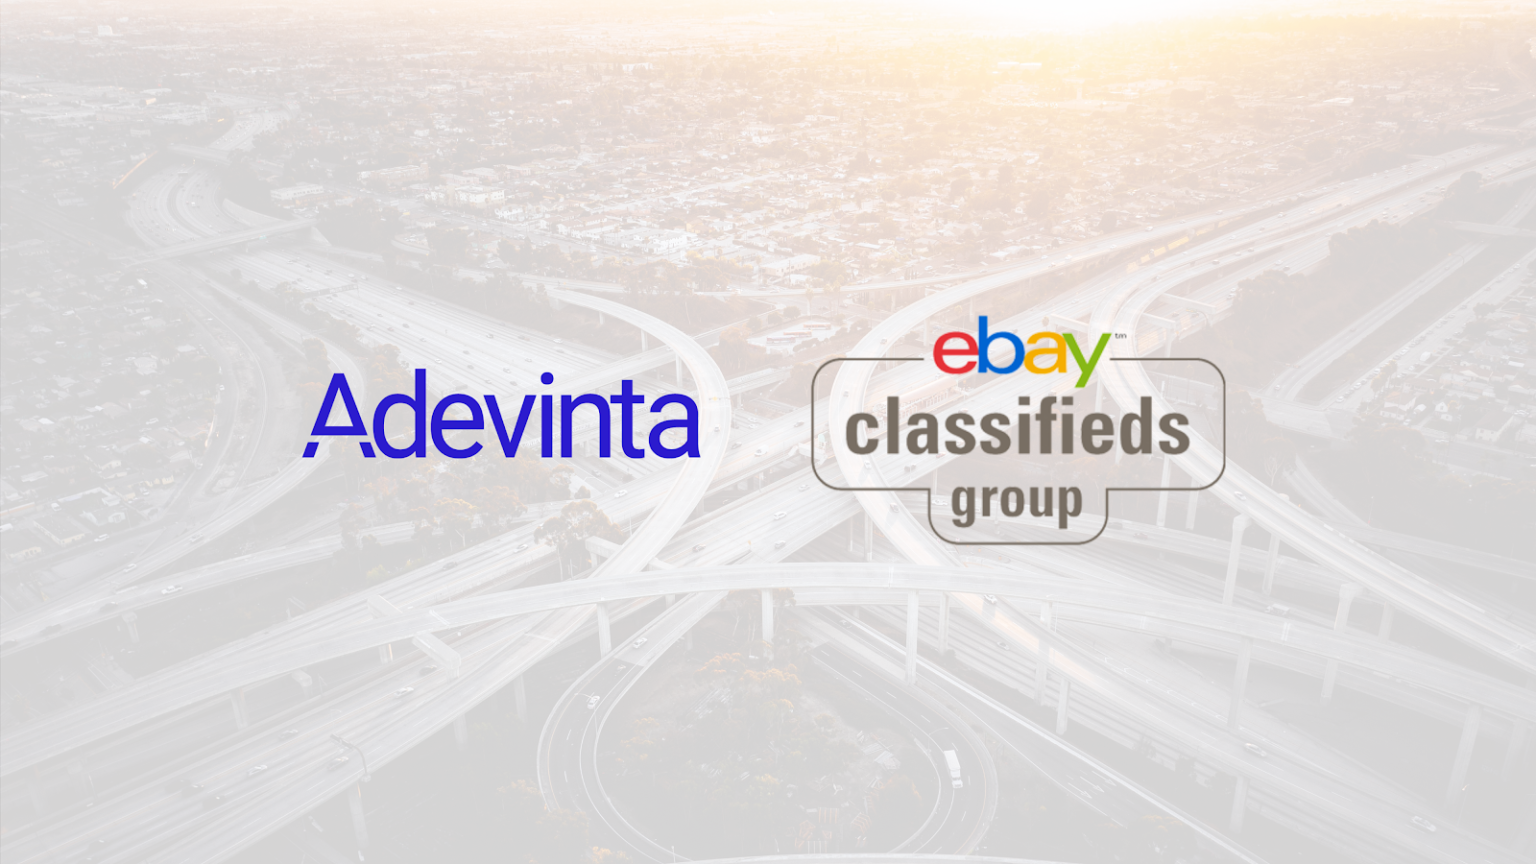 Adevinta se queda con la división de anuncios clasificados de eBay por 9.200 millones